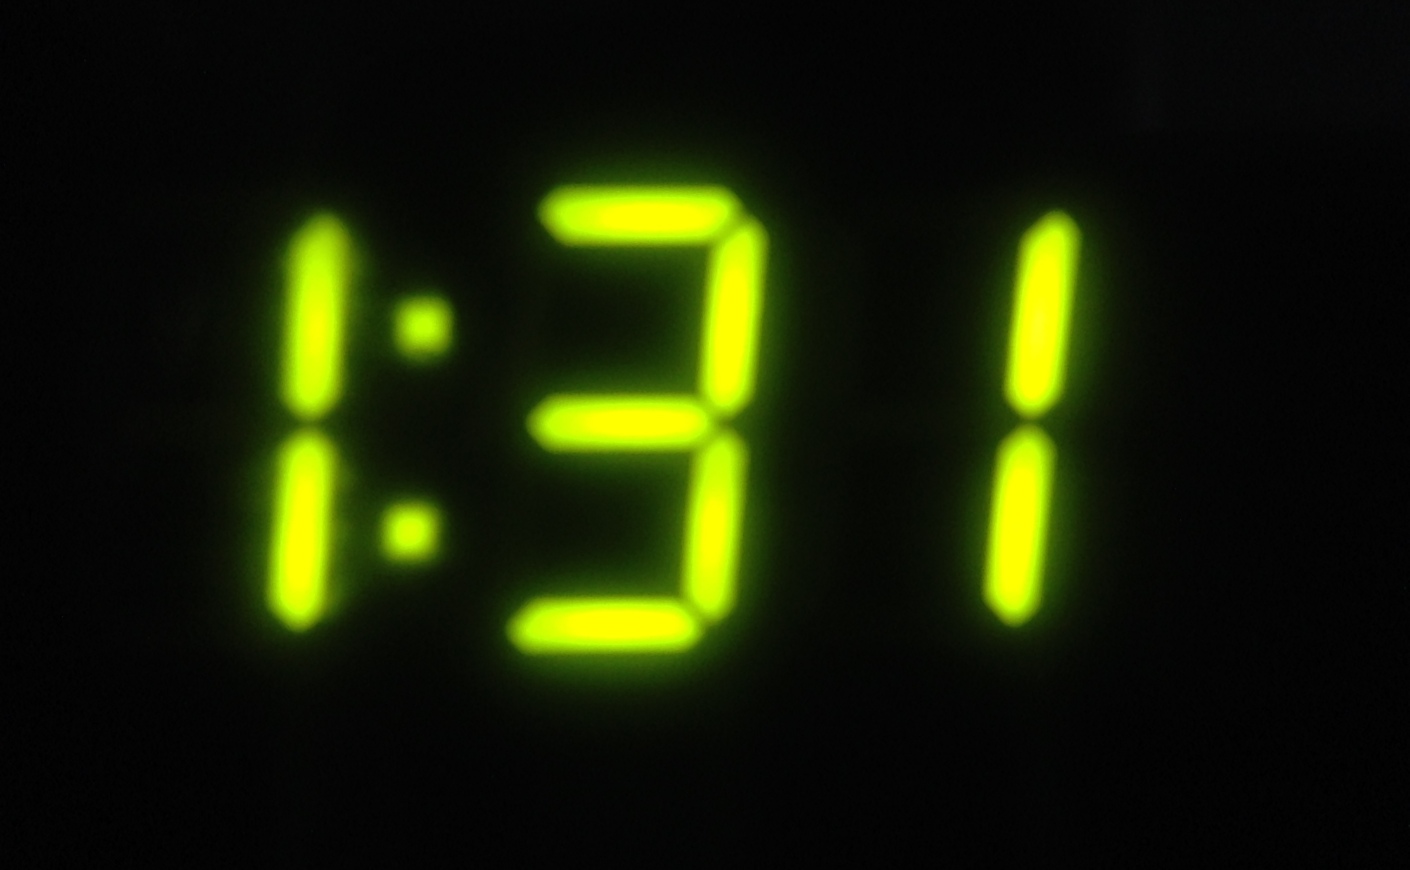 3 числа ночи. 11 11 Электронные часы. 3:13 На электронных часах. На электронных часах 22:22. Часы 11 часов.